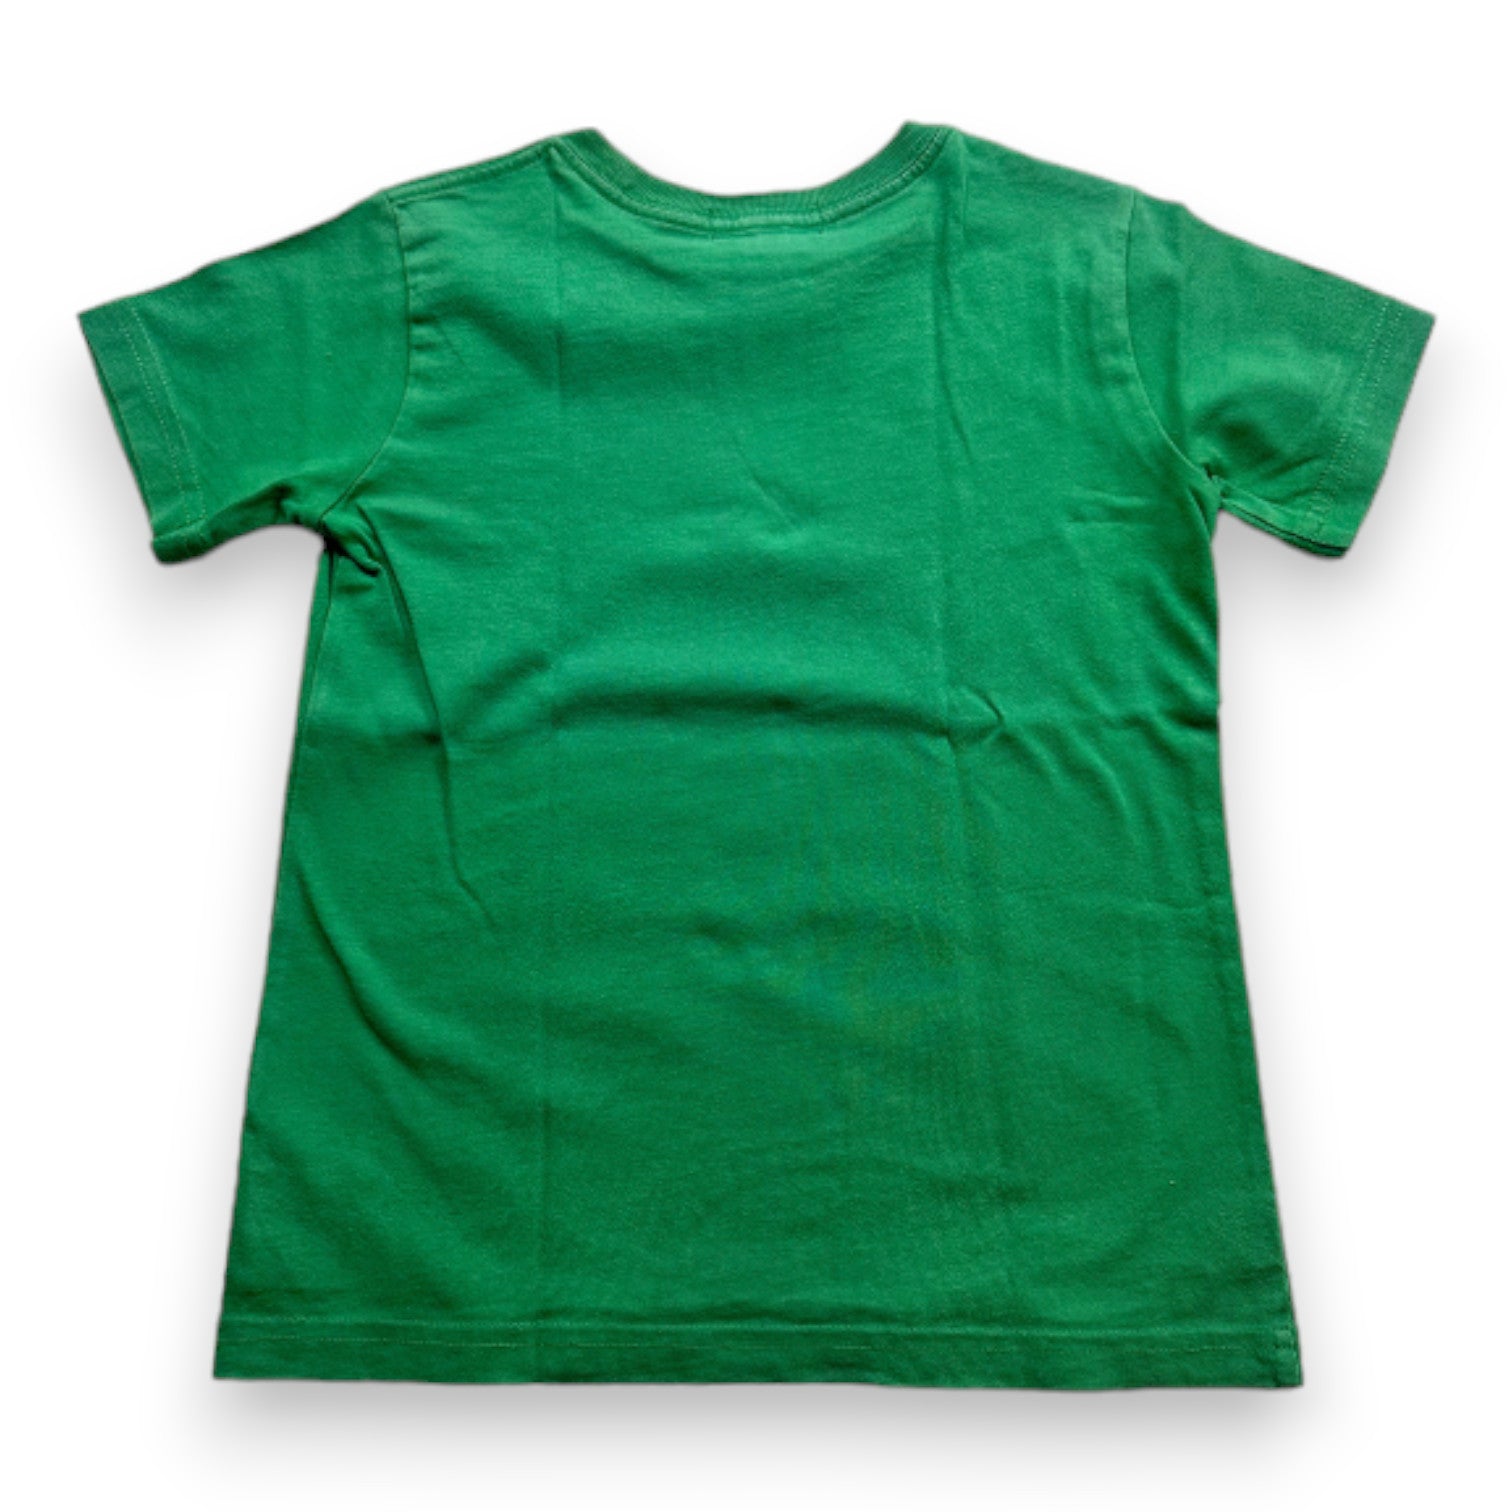 RALPH LAUREN - T-shirt à manches courtes vert avec imprimé - 5 ans